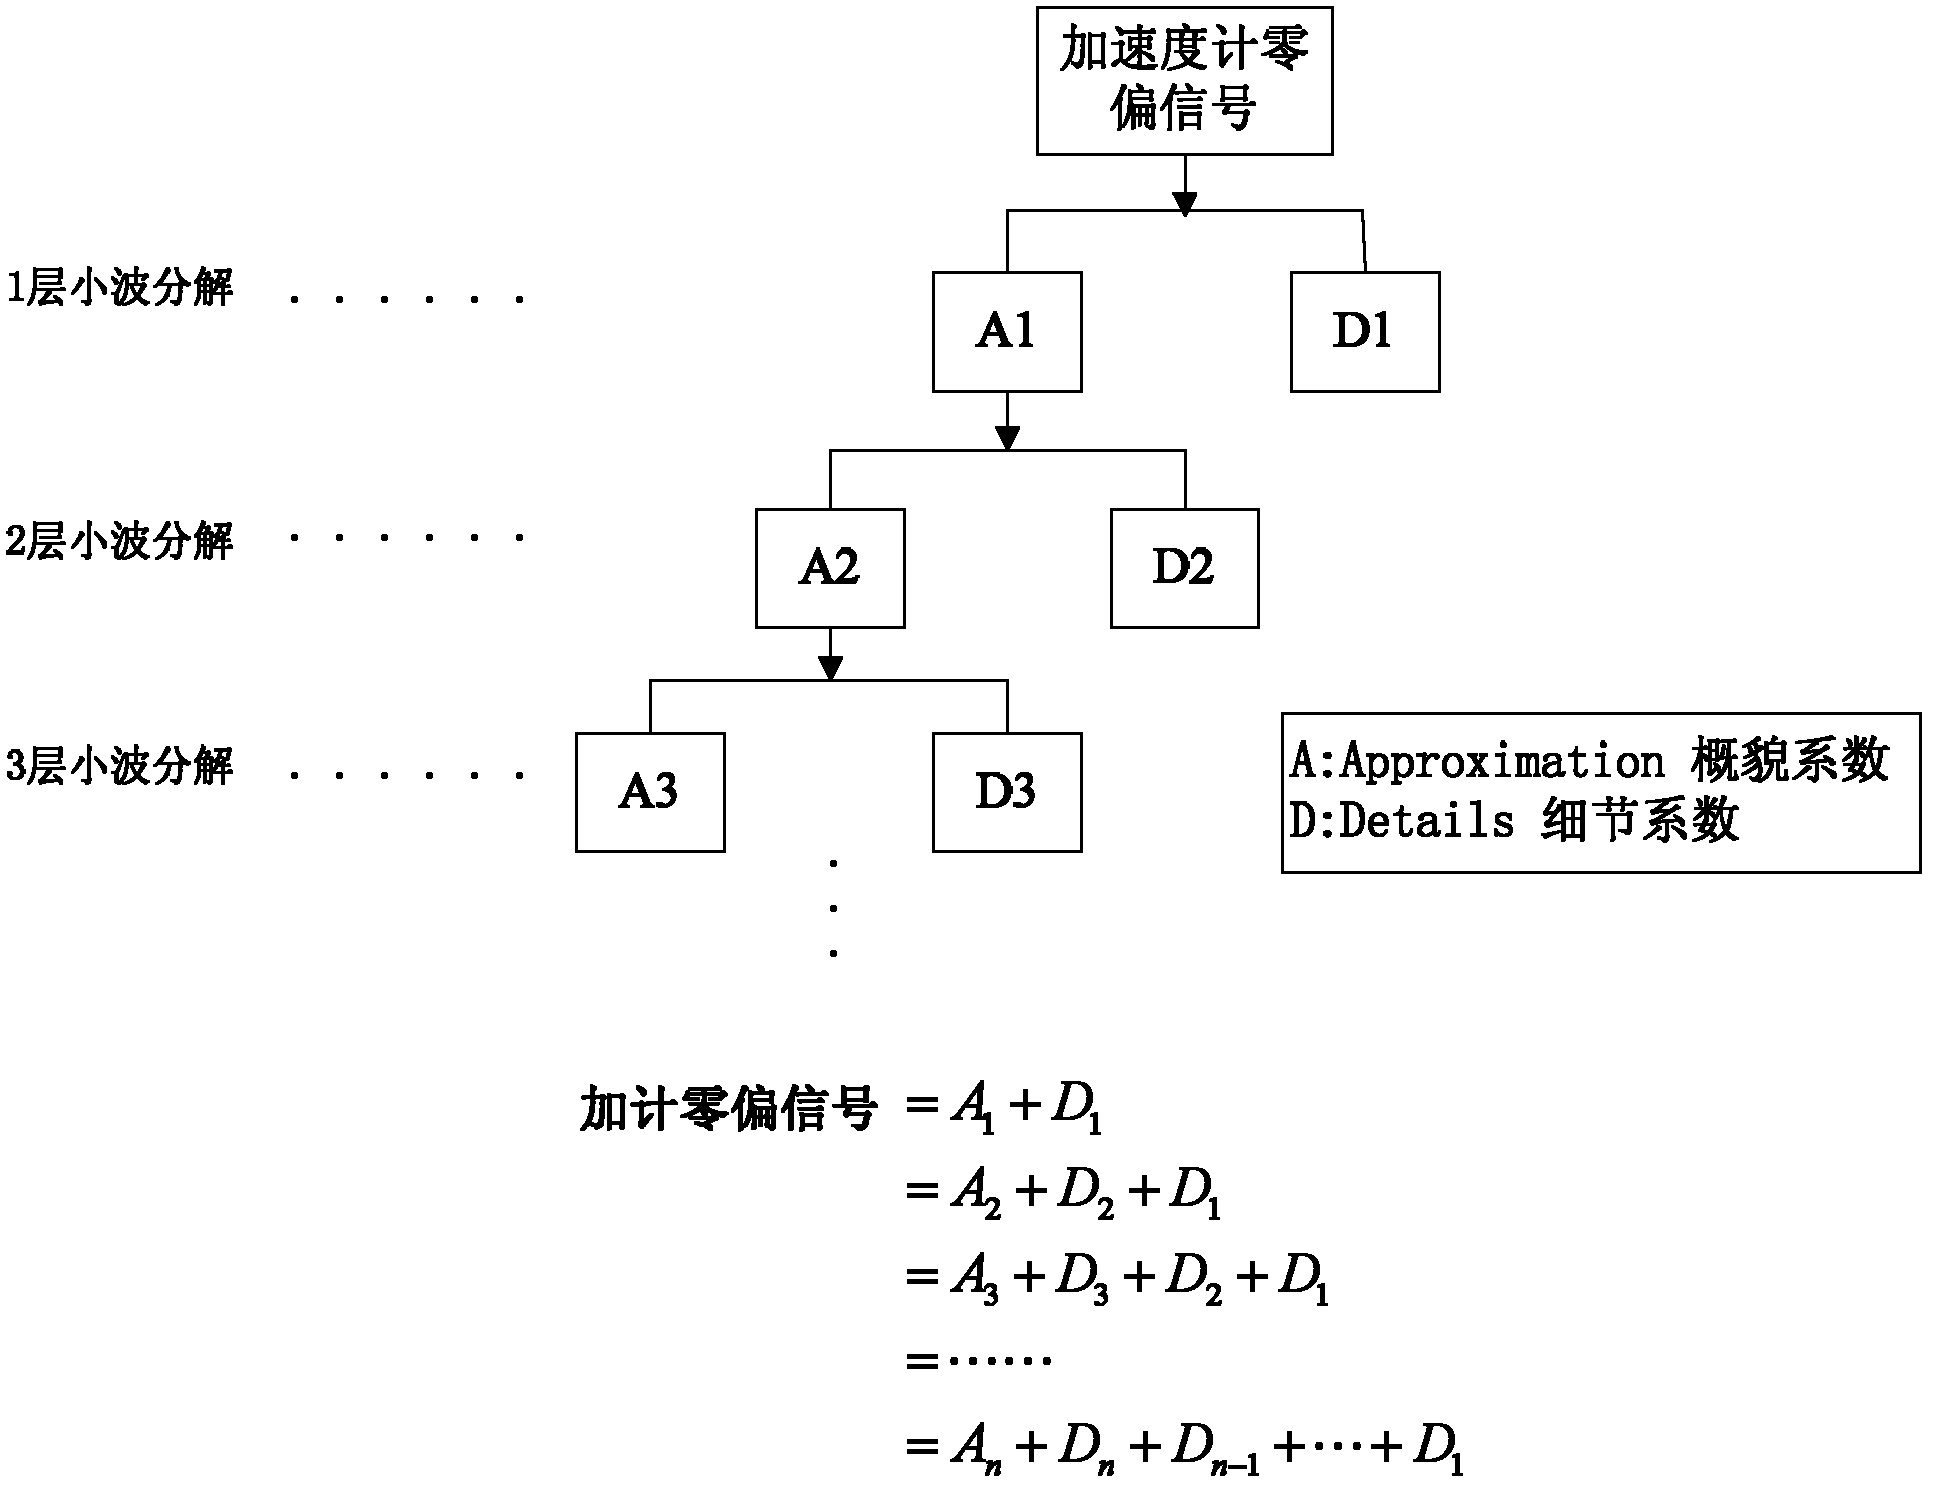 Temperature compensation method for accelerometer based on wavelet noise elimination